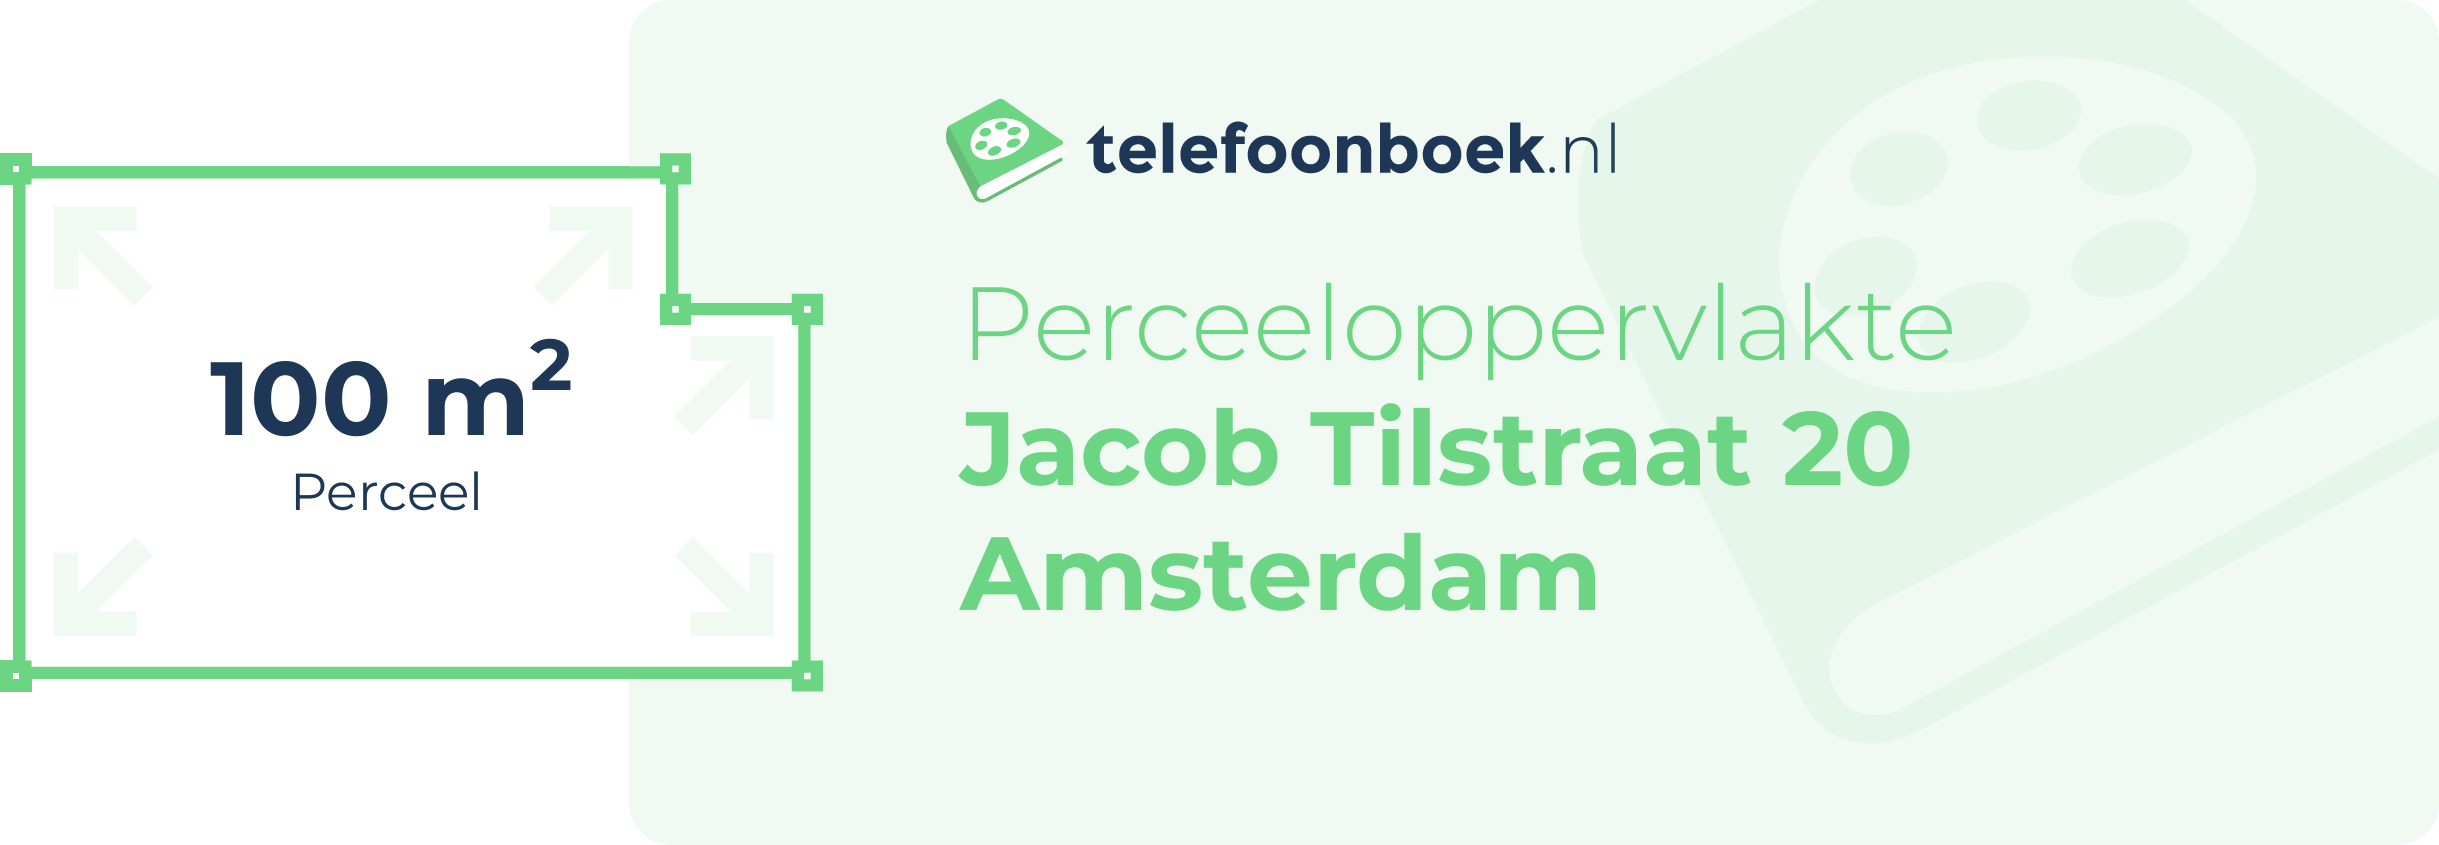 Perceeloppervlakte Jacob Tilstraat 20 Amsterdam